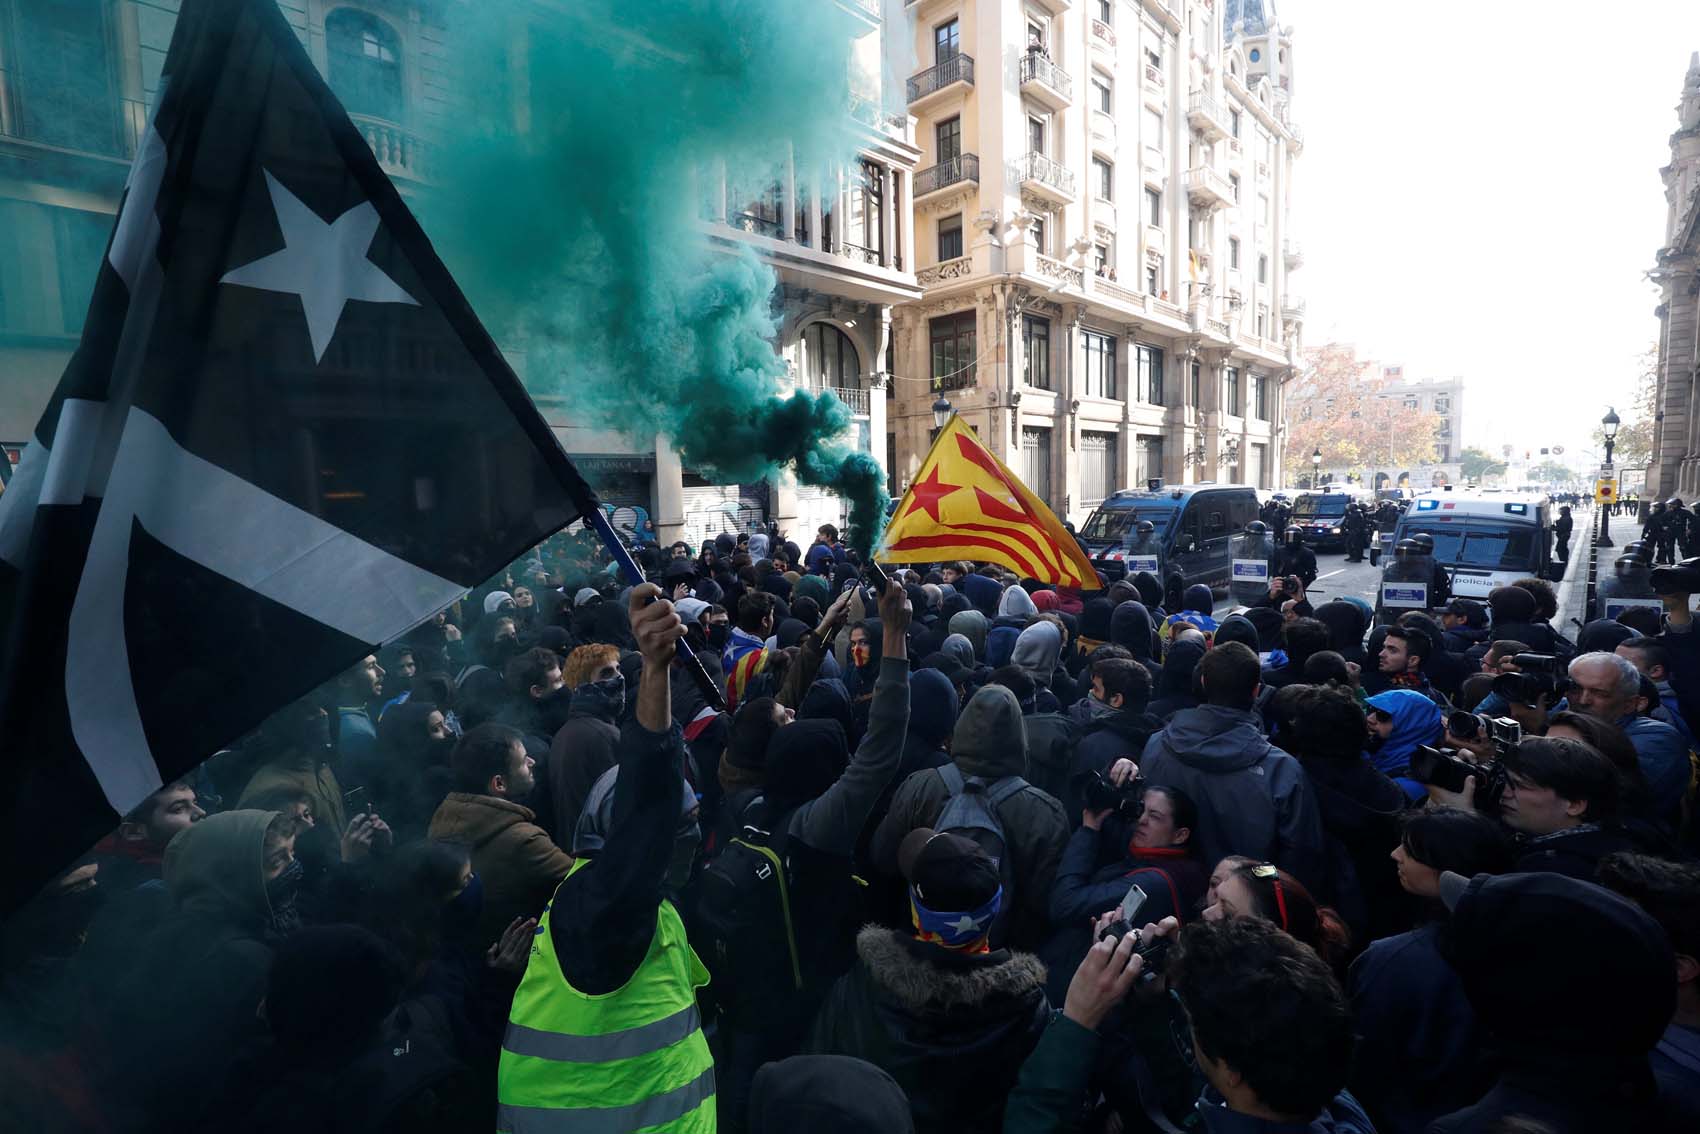 Carreteras trancadas en Cataluña en protesta por reunión de Consejo de Ministros en Barcelona (fotos)